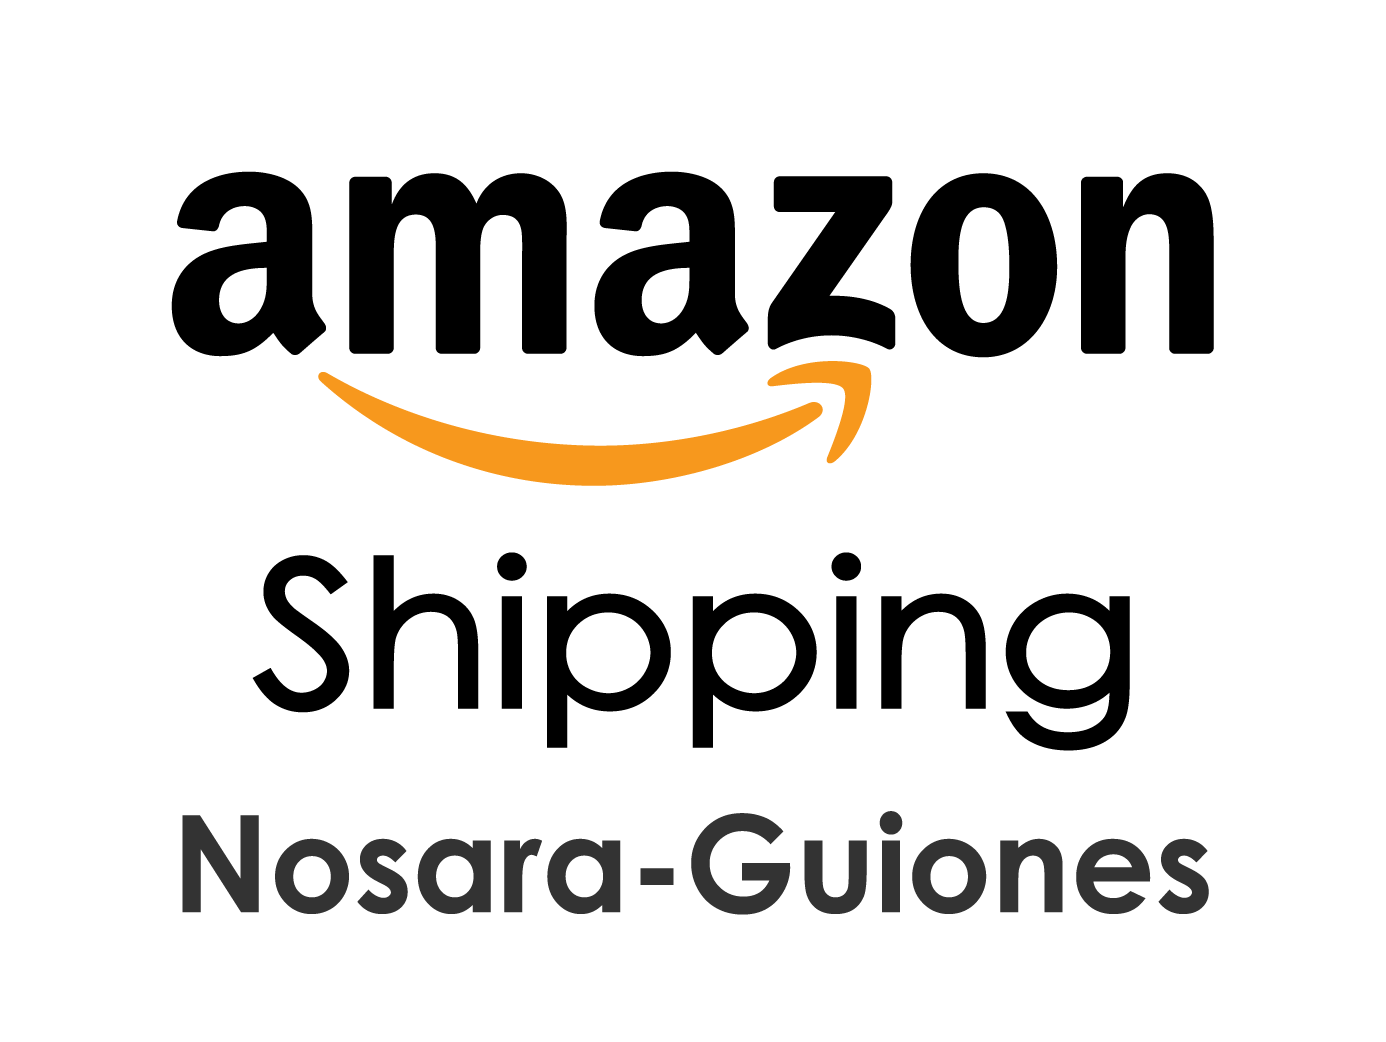 Amazon Guiones-Nosara